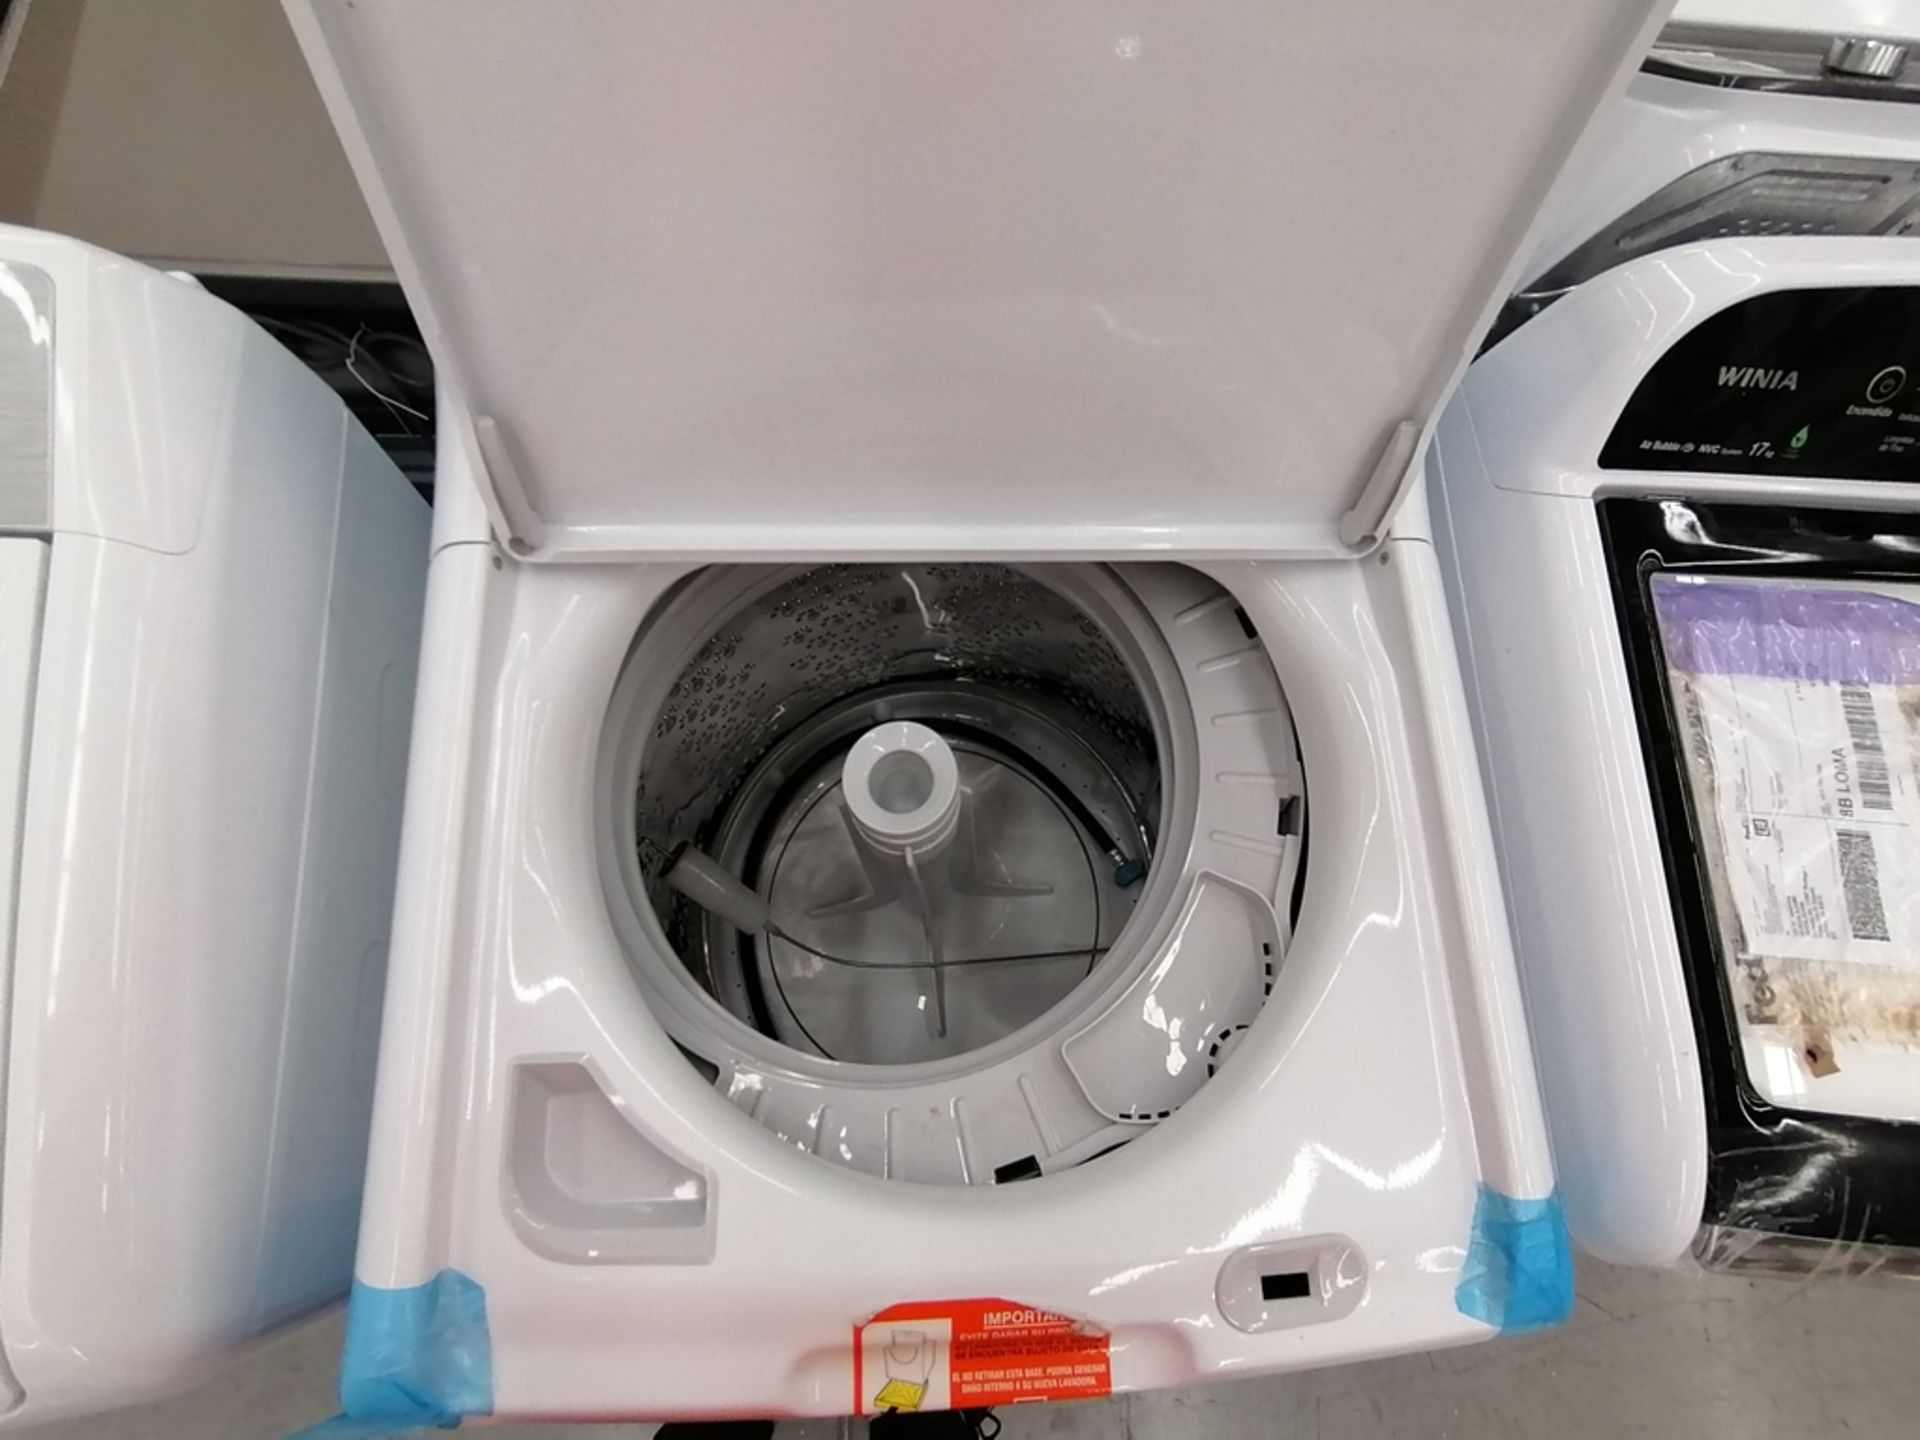 Lote de 3 lavadoras contiene: 1 Lavadora de 16KG, Marca Mabe, Modelo LMA46102VBAB02, Serie 2108S802 - Image 11 of 29